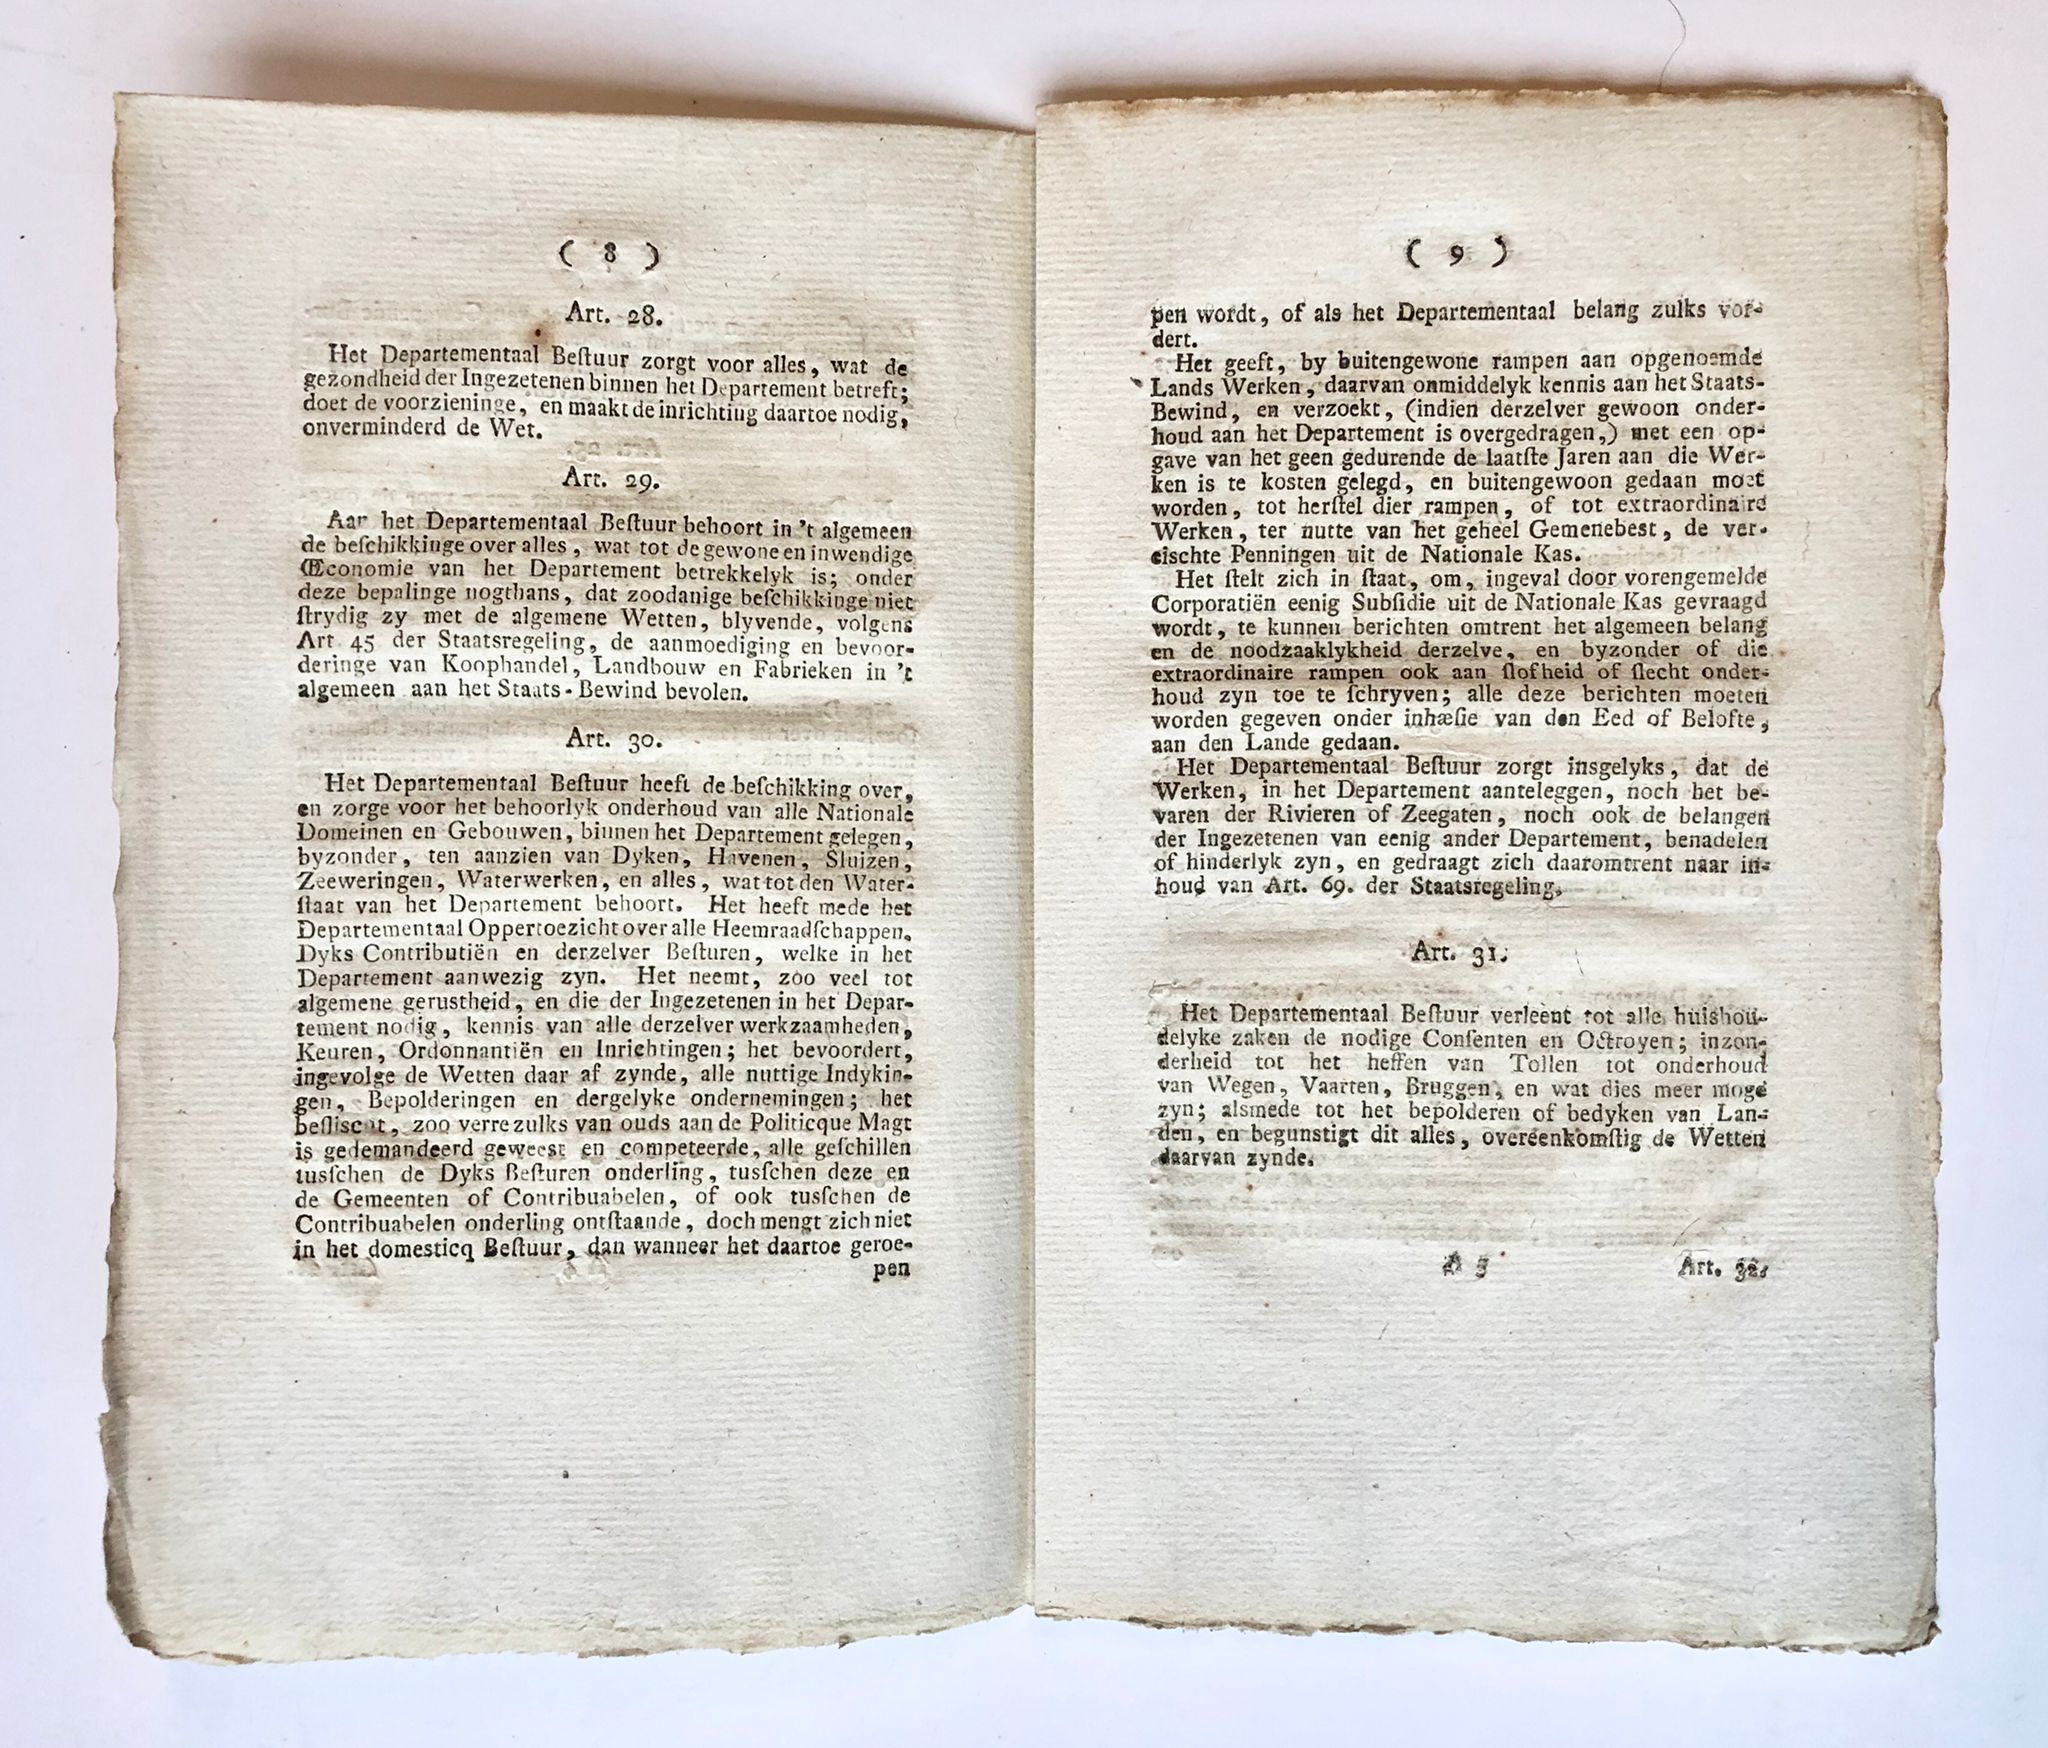 [Friesland [1802]] Reglement voor het departement Friesland, [s.n., s.l.] [1802] 18 pp.